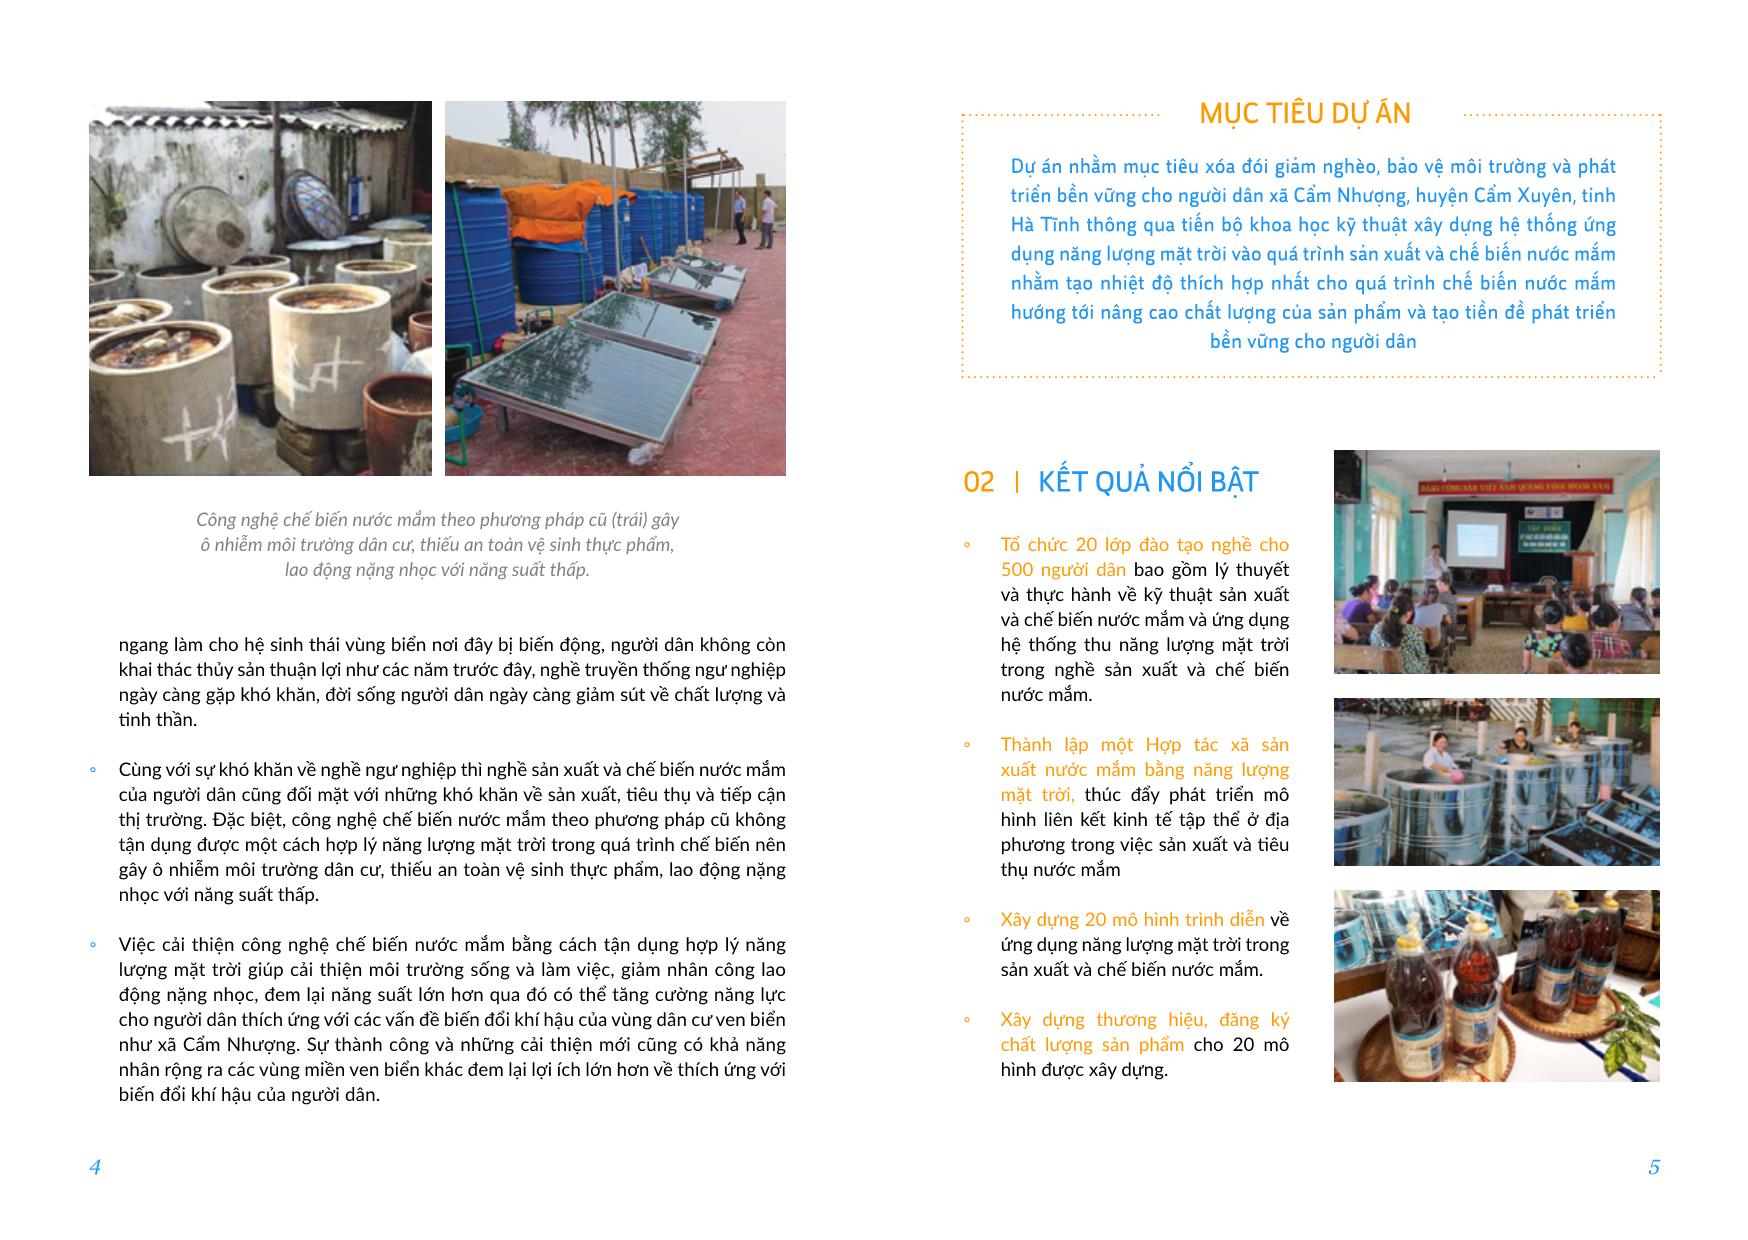 Dự án Ứng dụng năng lượng mặt trời trong sản xuất nước mắm tại xã Cẩm Nhượng, huyện Cẩm Xuyên, Hà Tĩnh trang 3